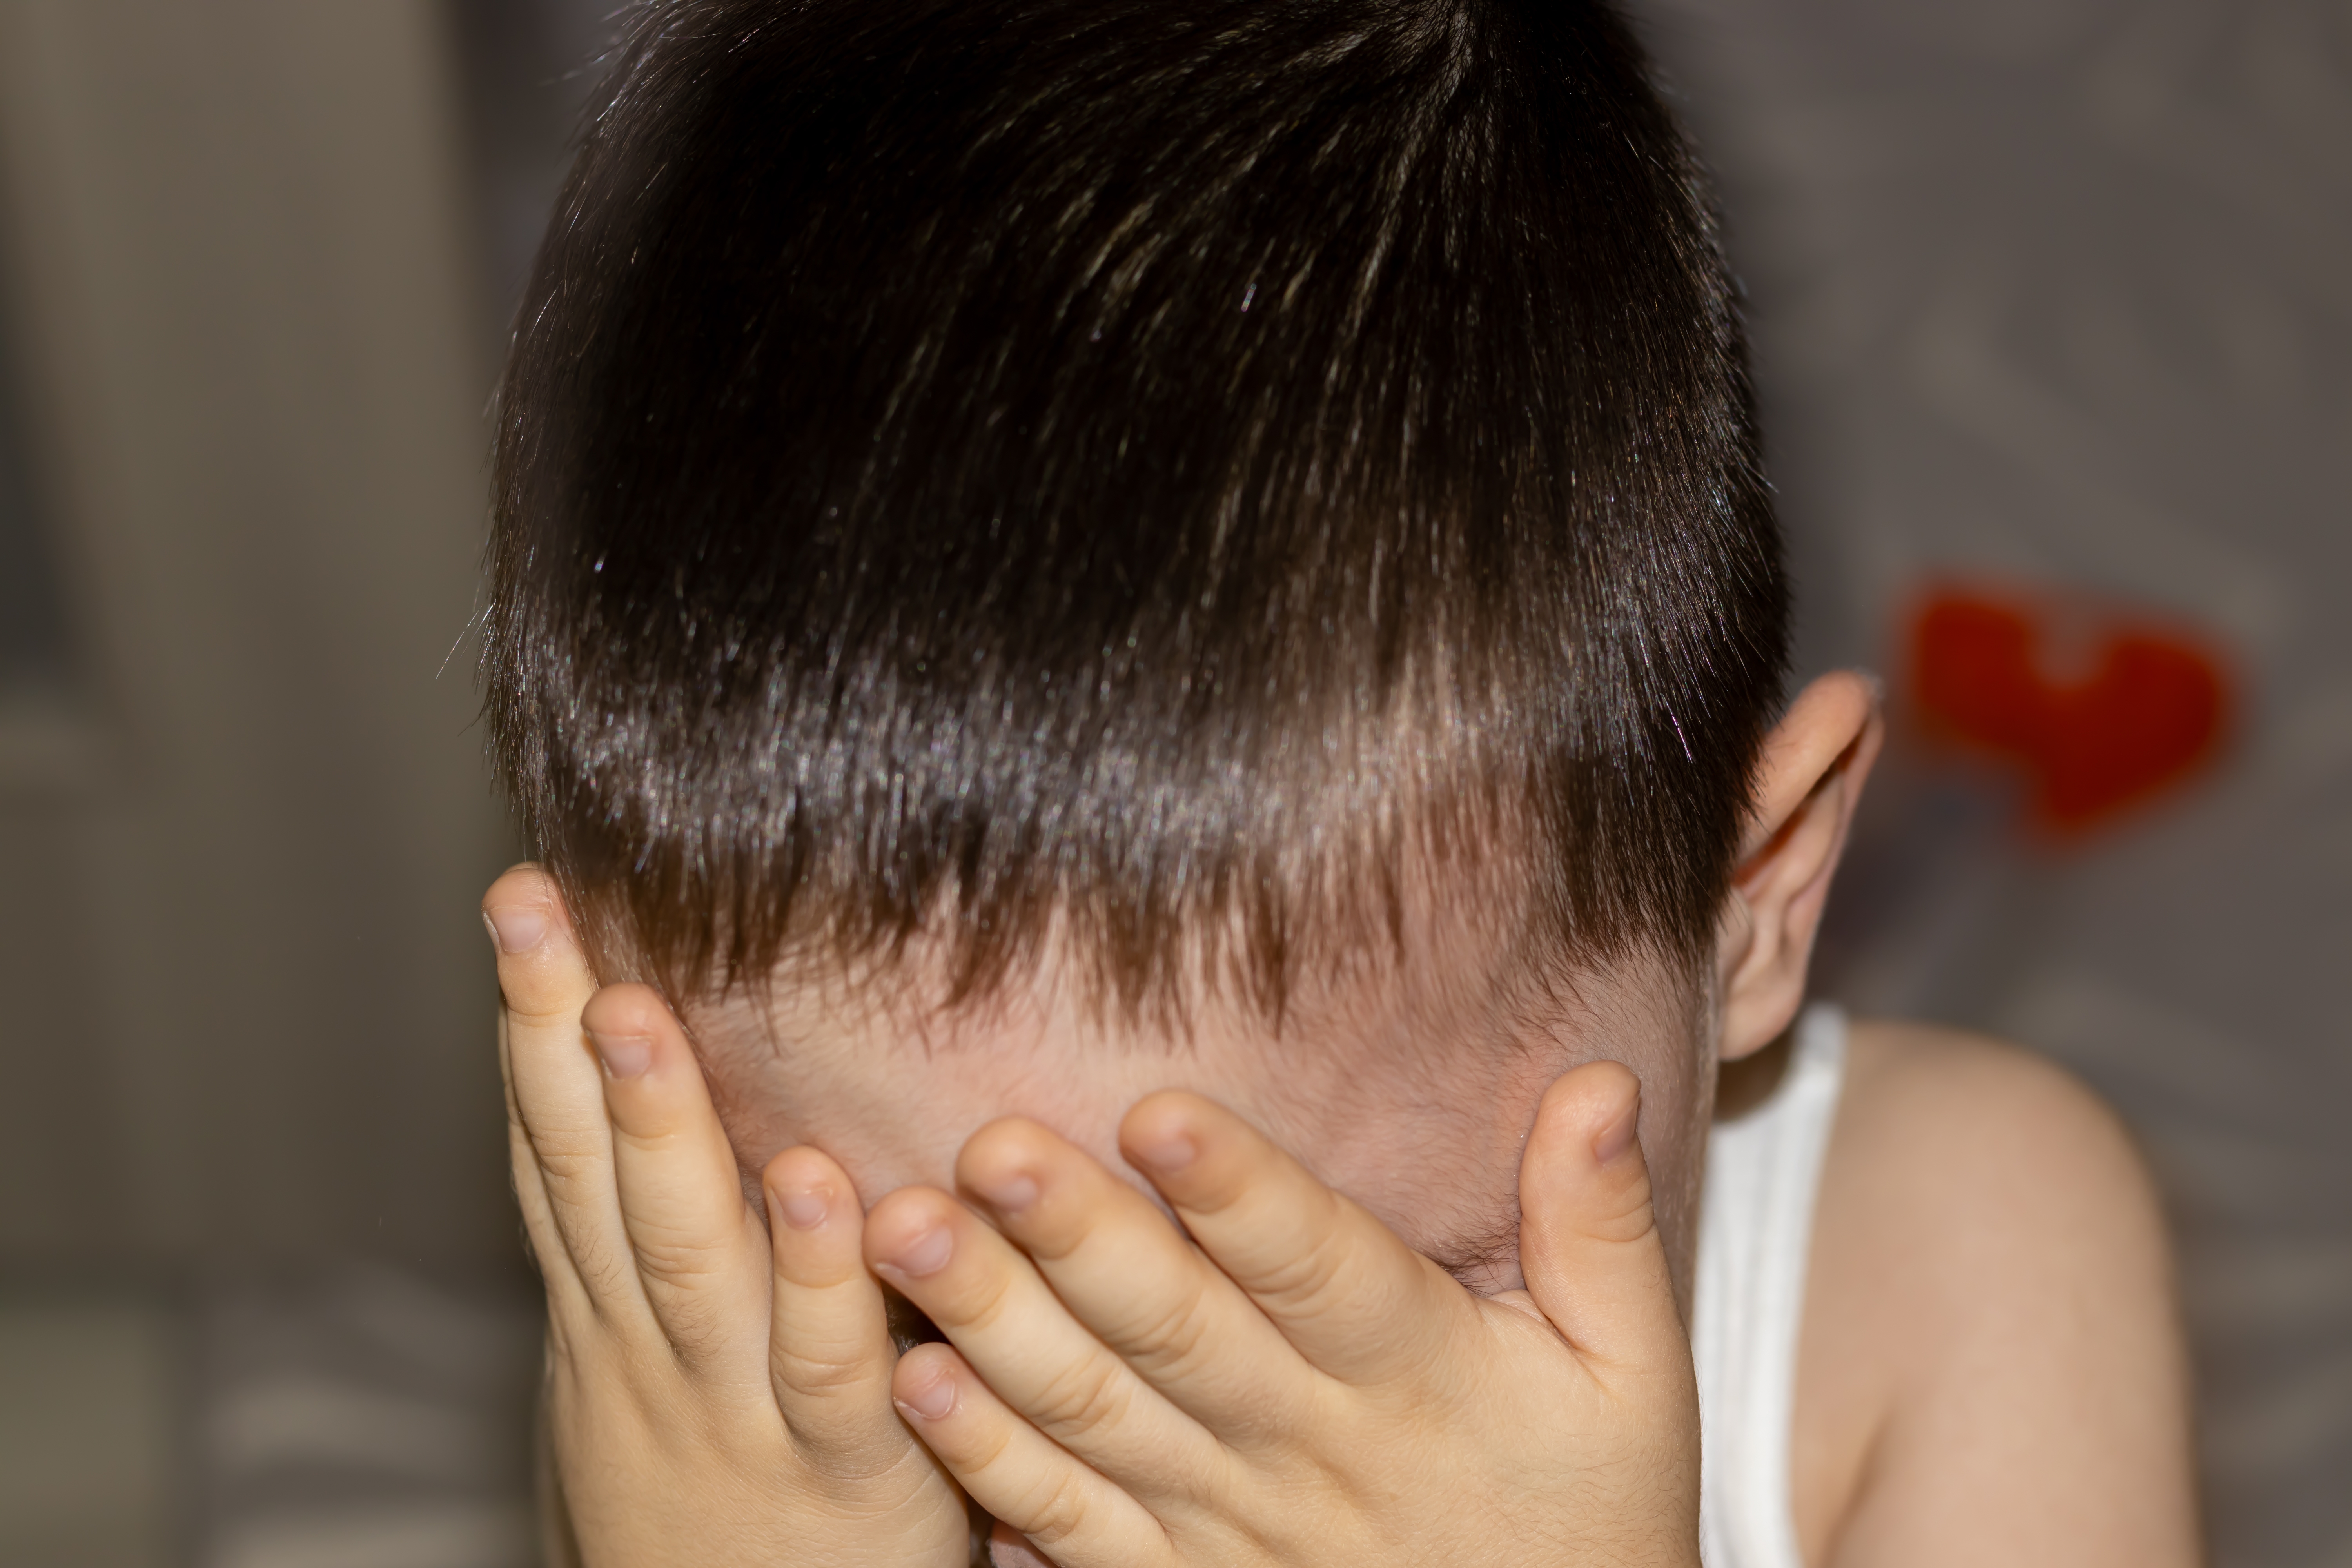 Ein Kind, das sein Gesicht versteckt | Quelle: Shutterstock